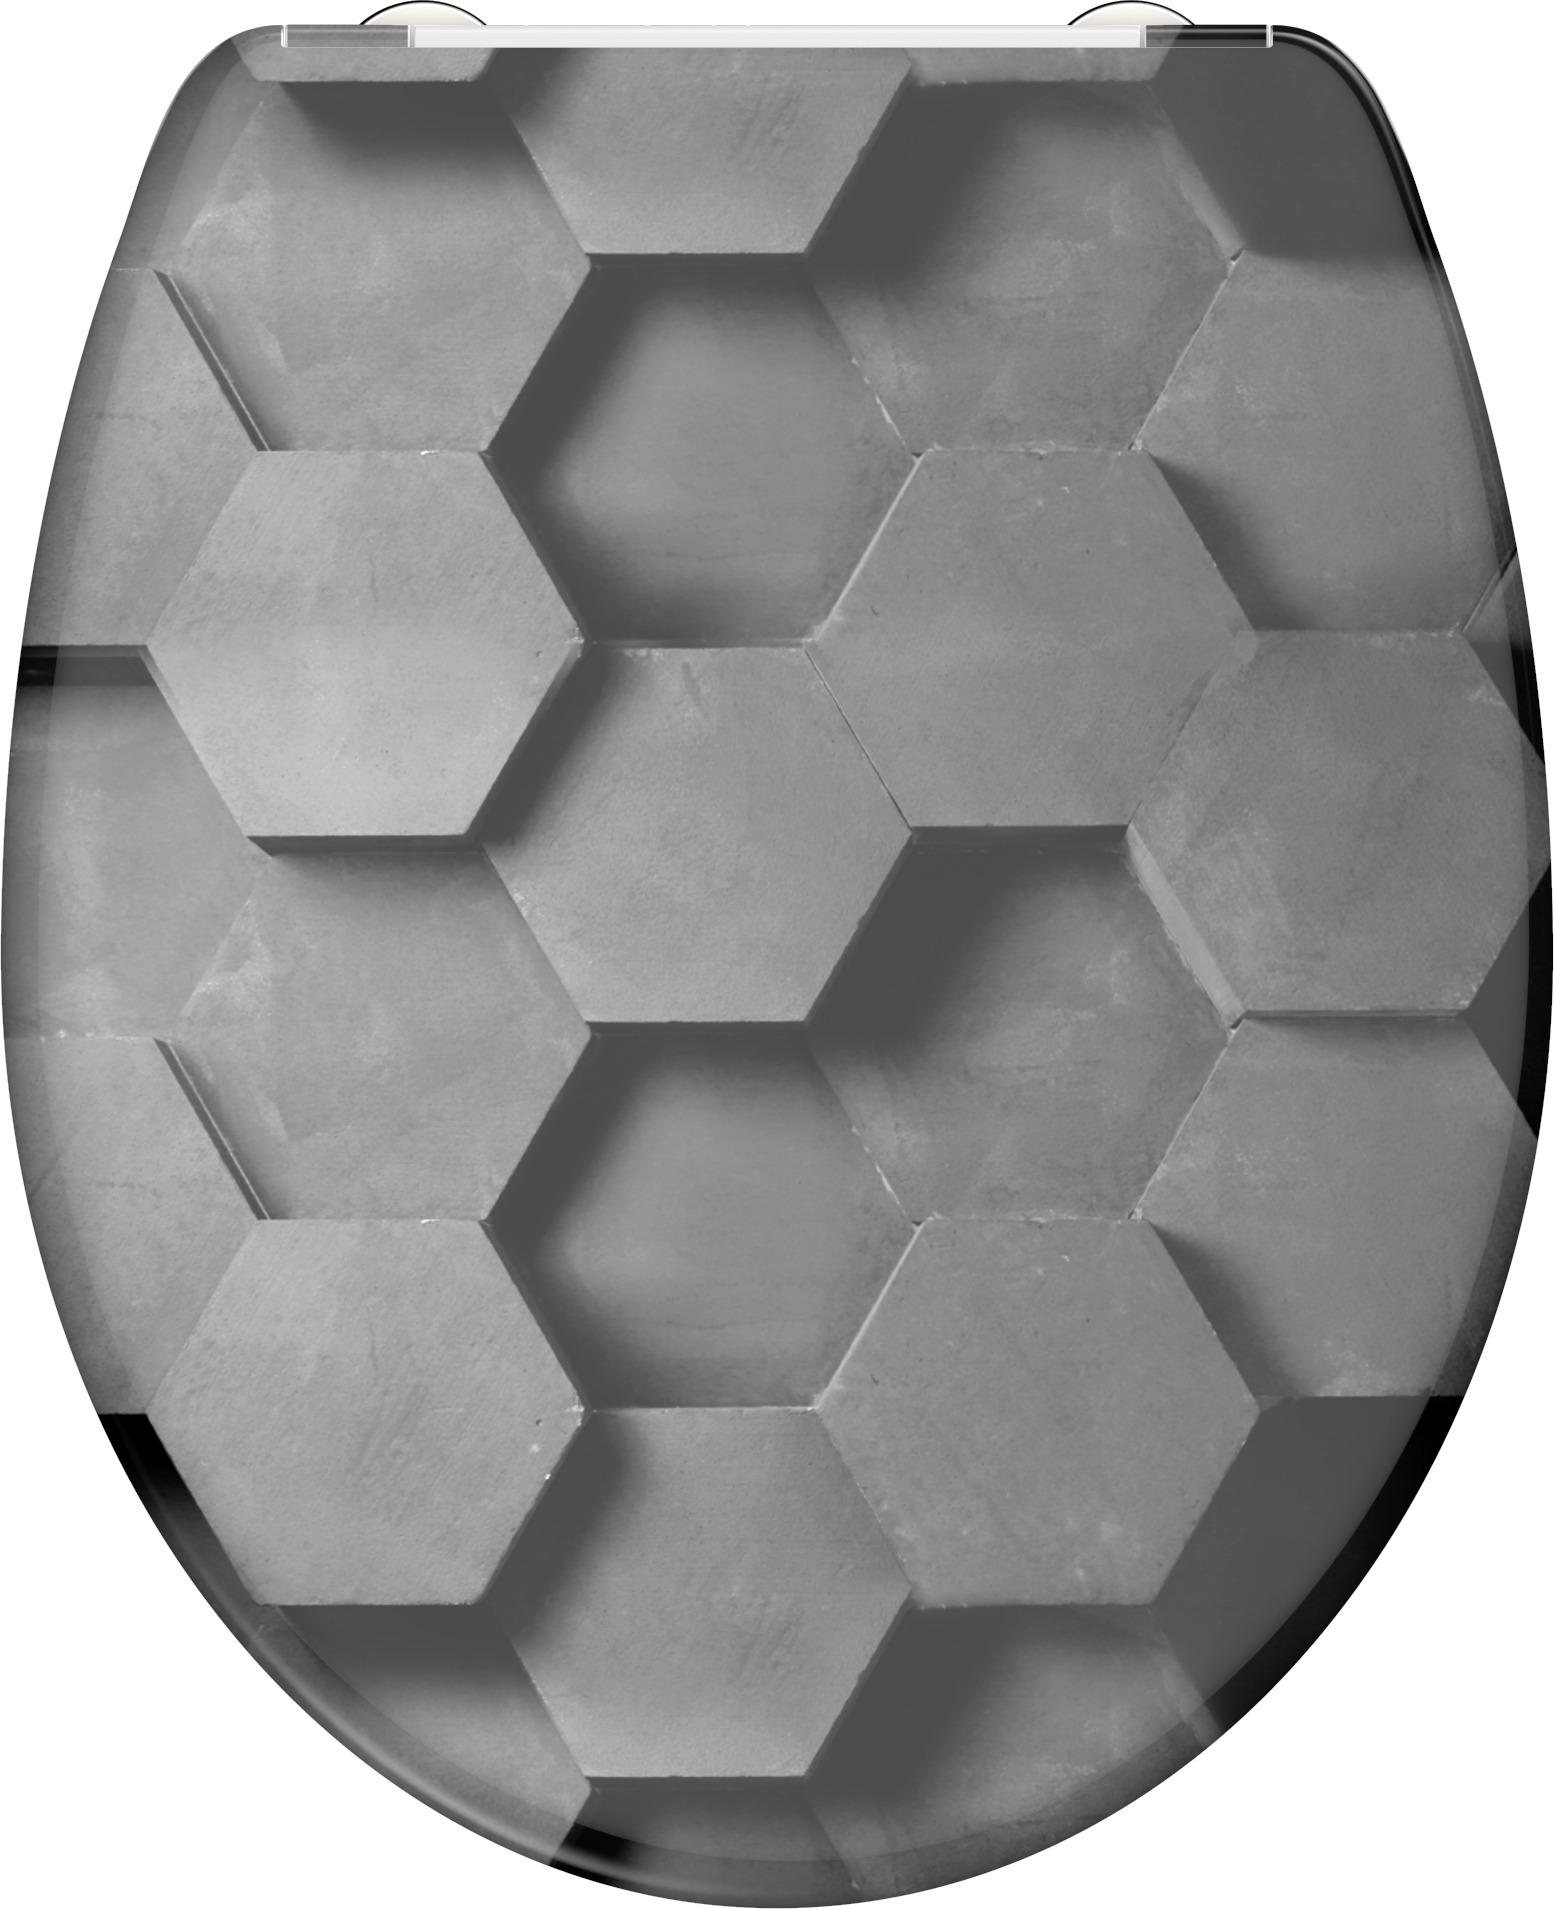 WC-Sitz Grau Hexagonmuster mit Absenkautomatik B: 38 cm - Schwarz/Weiß, KONVENTIONELL, Kunststoff (38/5,5/45cm)